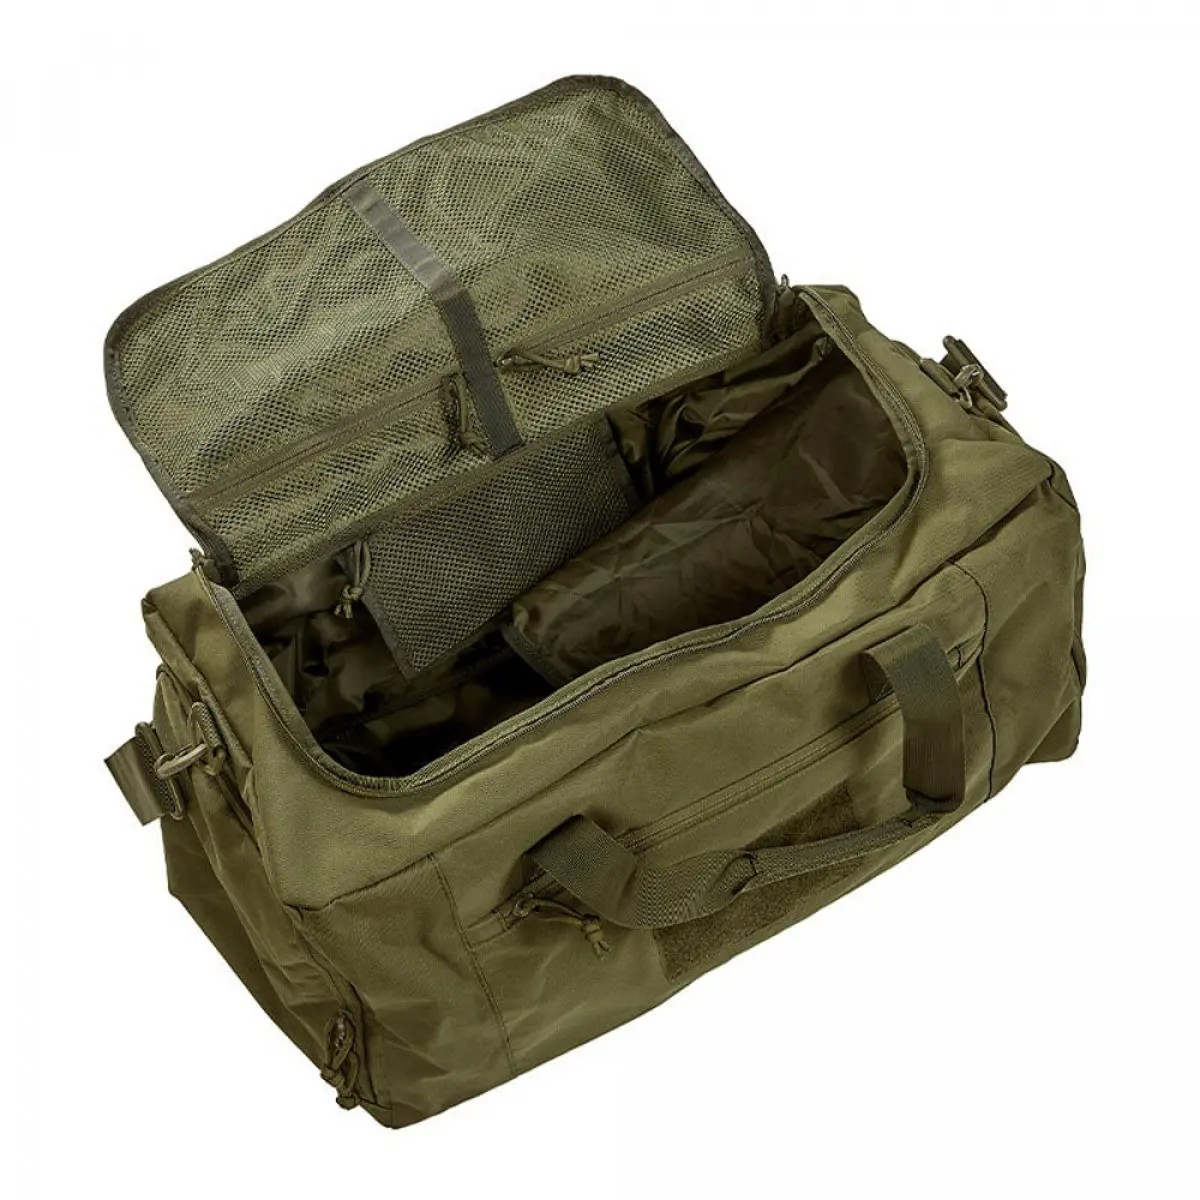 Транспортная сумка Transall A10 Equipment® на 45 л. Влагостойкое покрытие. Олива 3